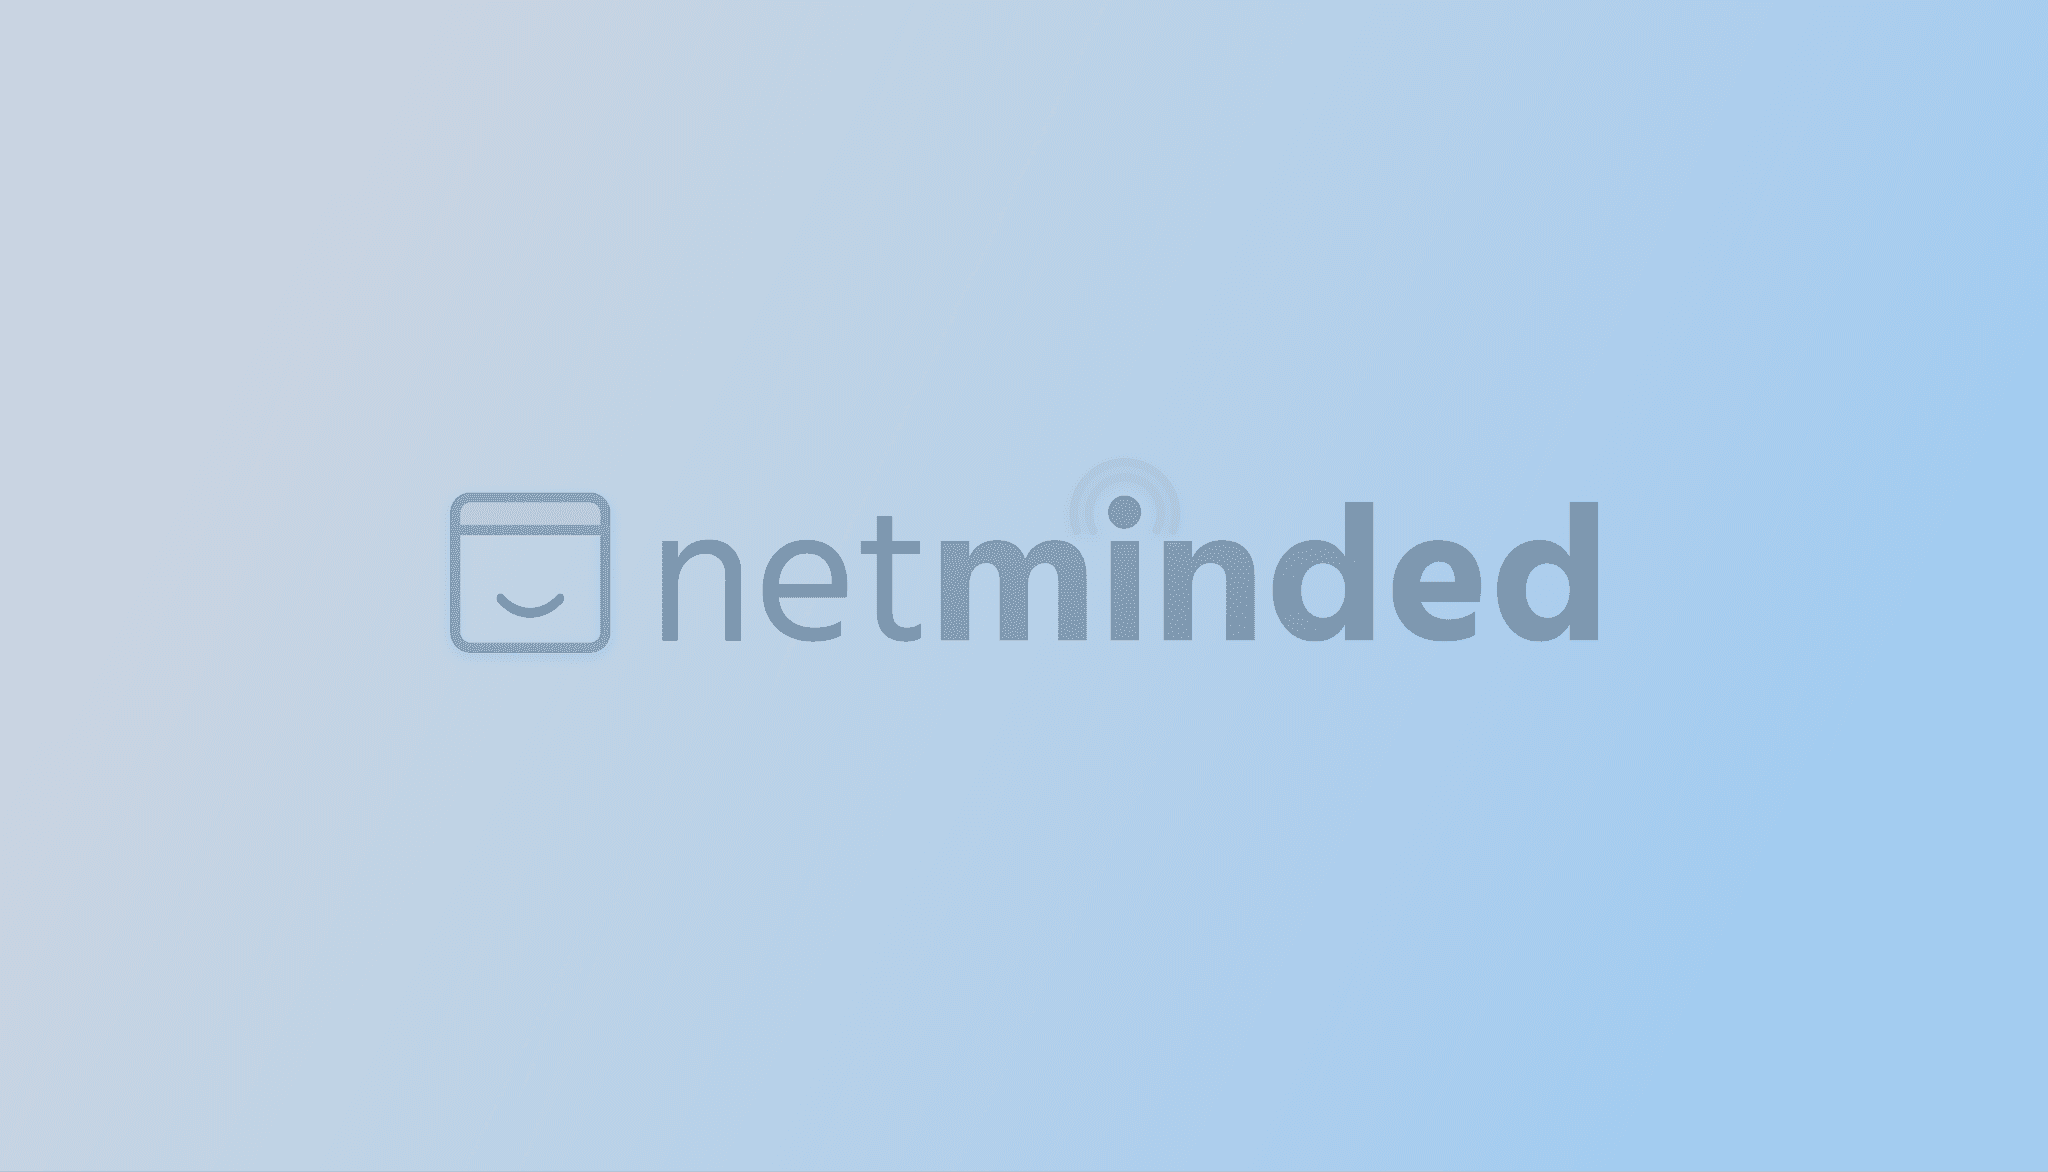 NetMinded Logo Against Light Background